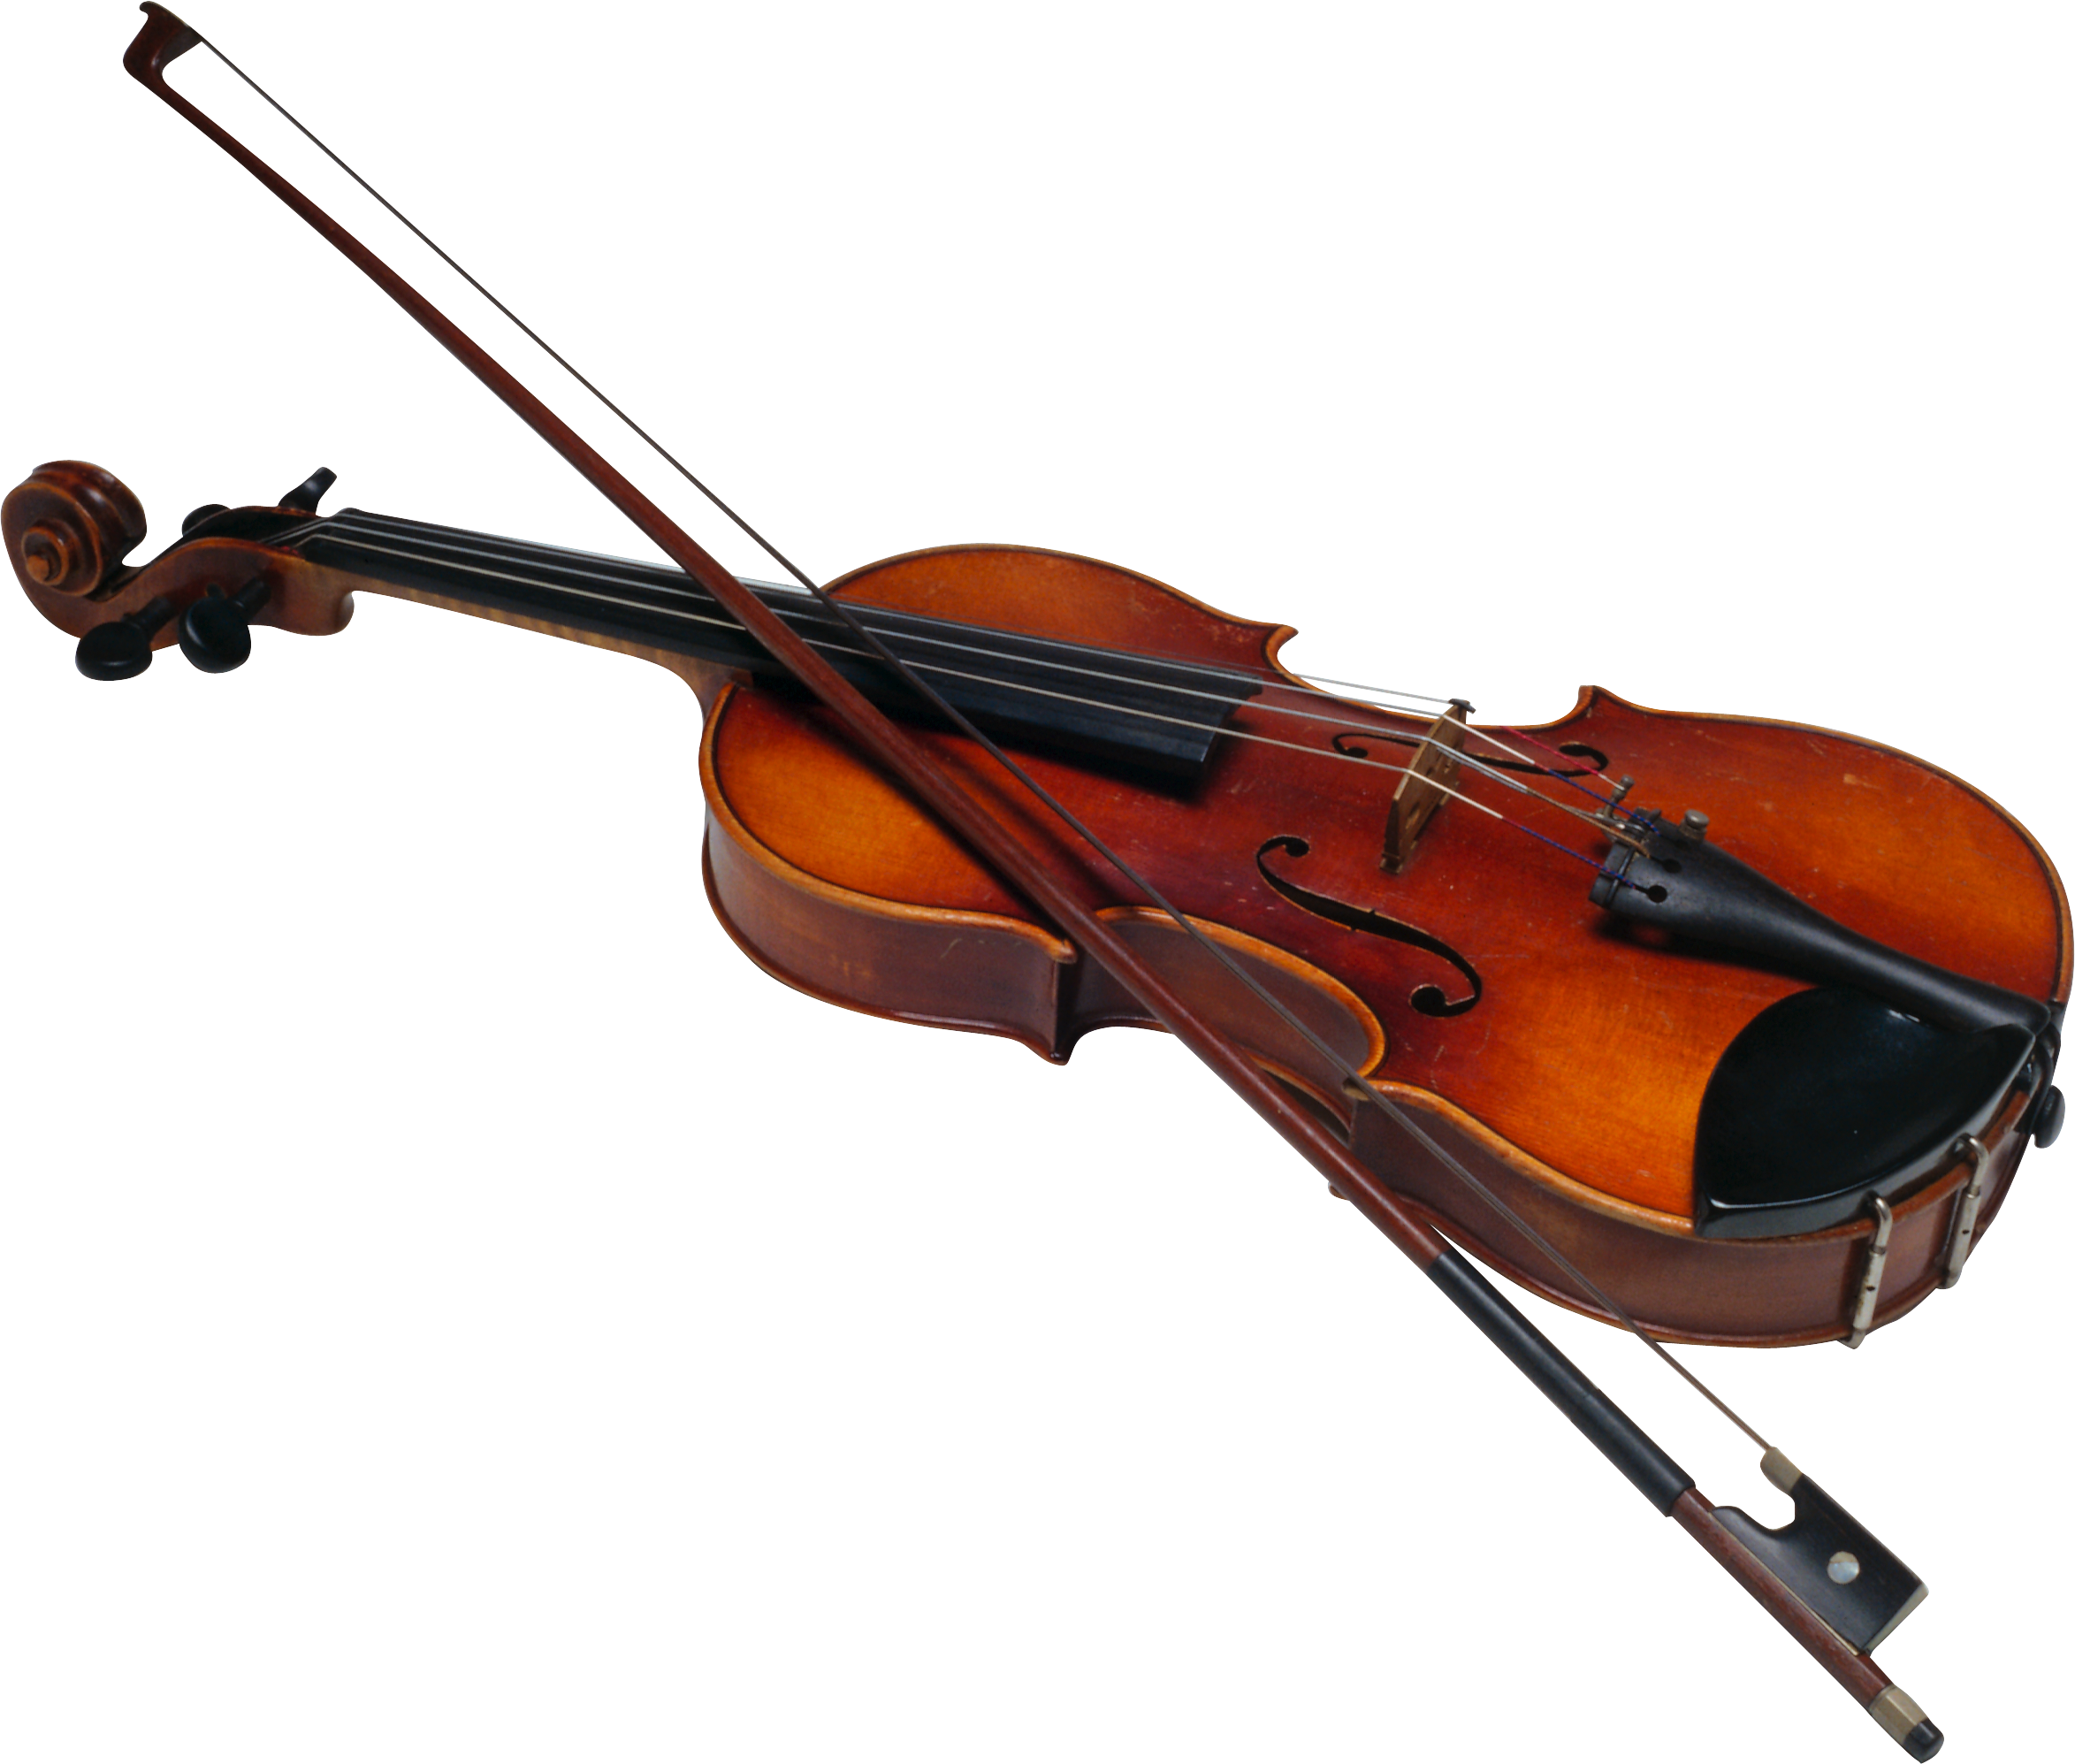 Violin & Bow PNG Image